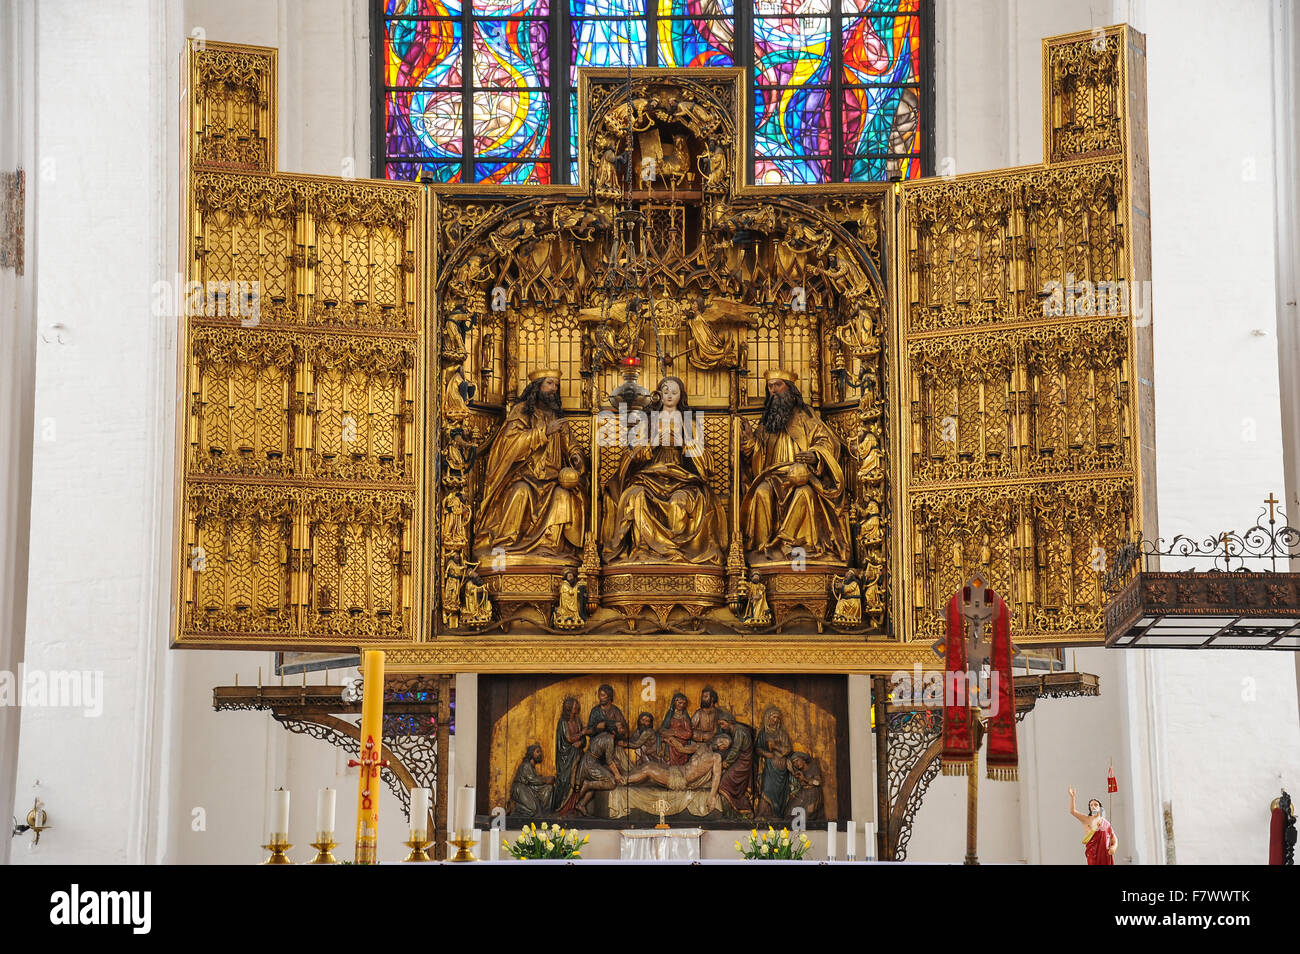 Altarpiece in Kościół Mariacki, Gdansk, Poland Stock Photo